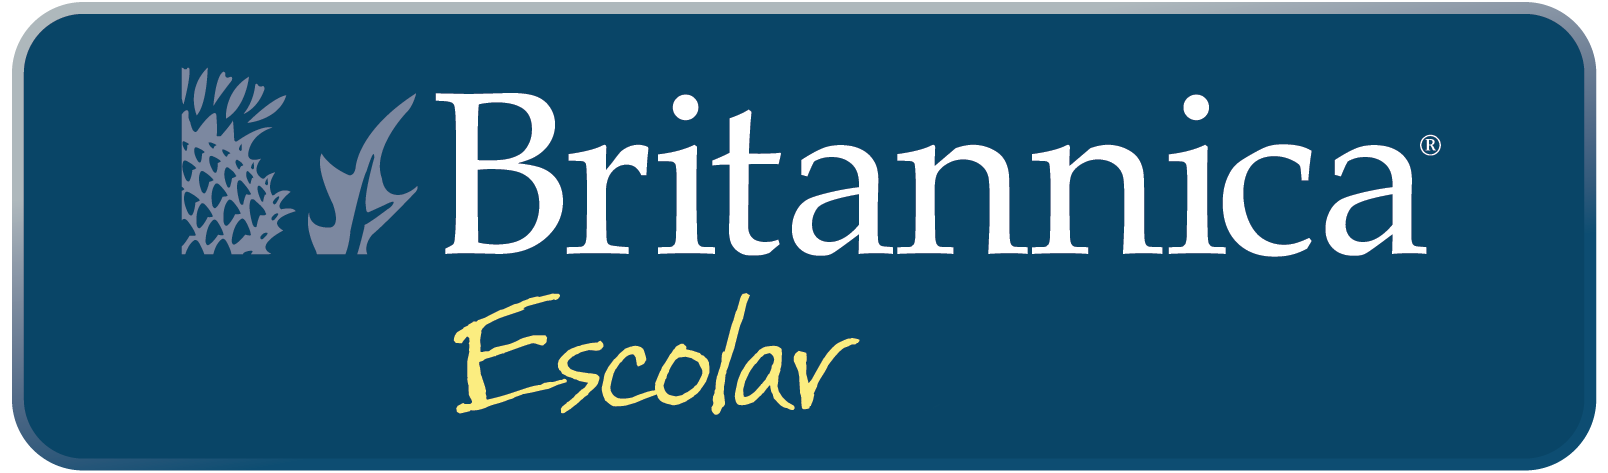 Britannica® Escolar Britannica Education